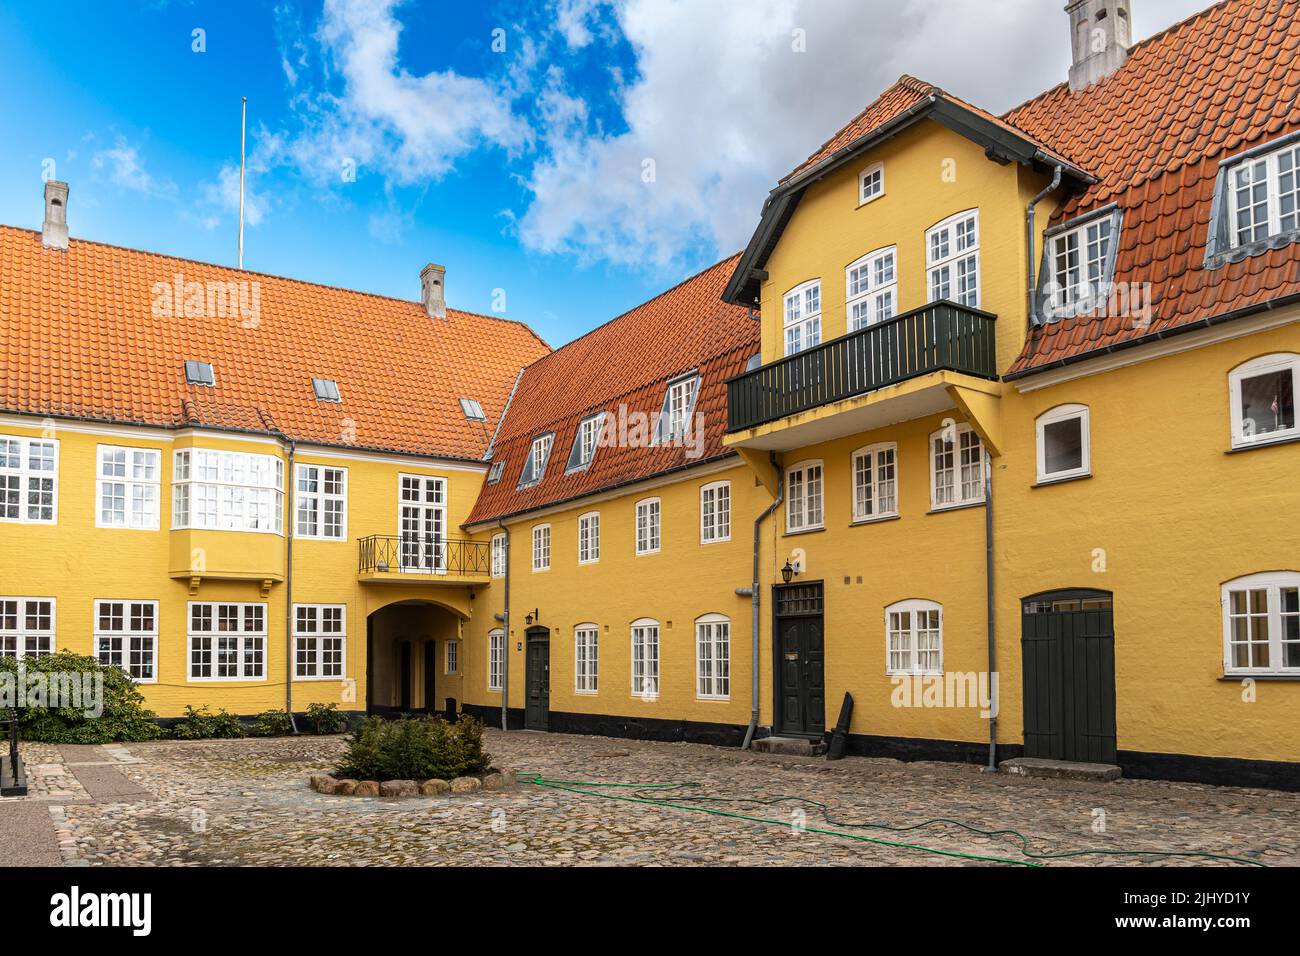 Característico patio interior rodeado de casas y almacenes. Assens, Dinamarca, Europa Foto de stock